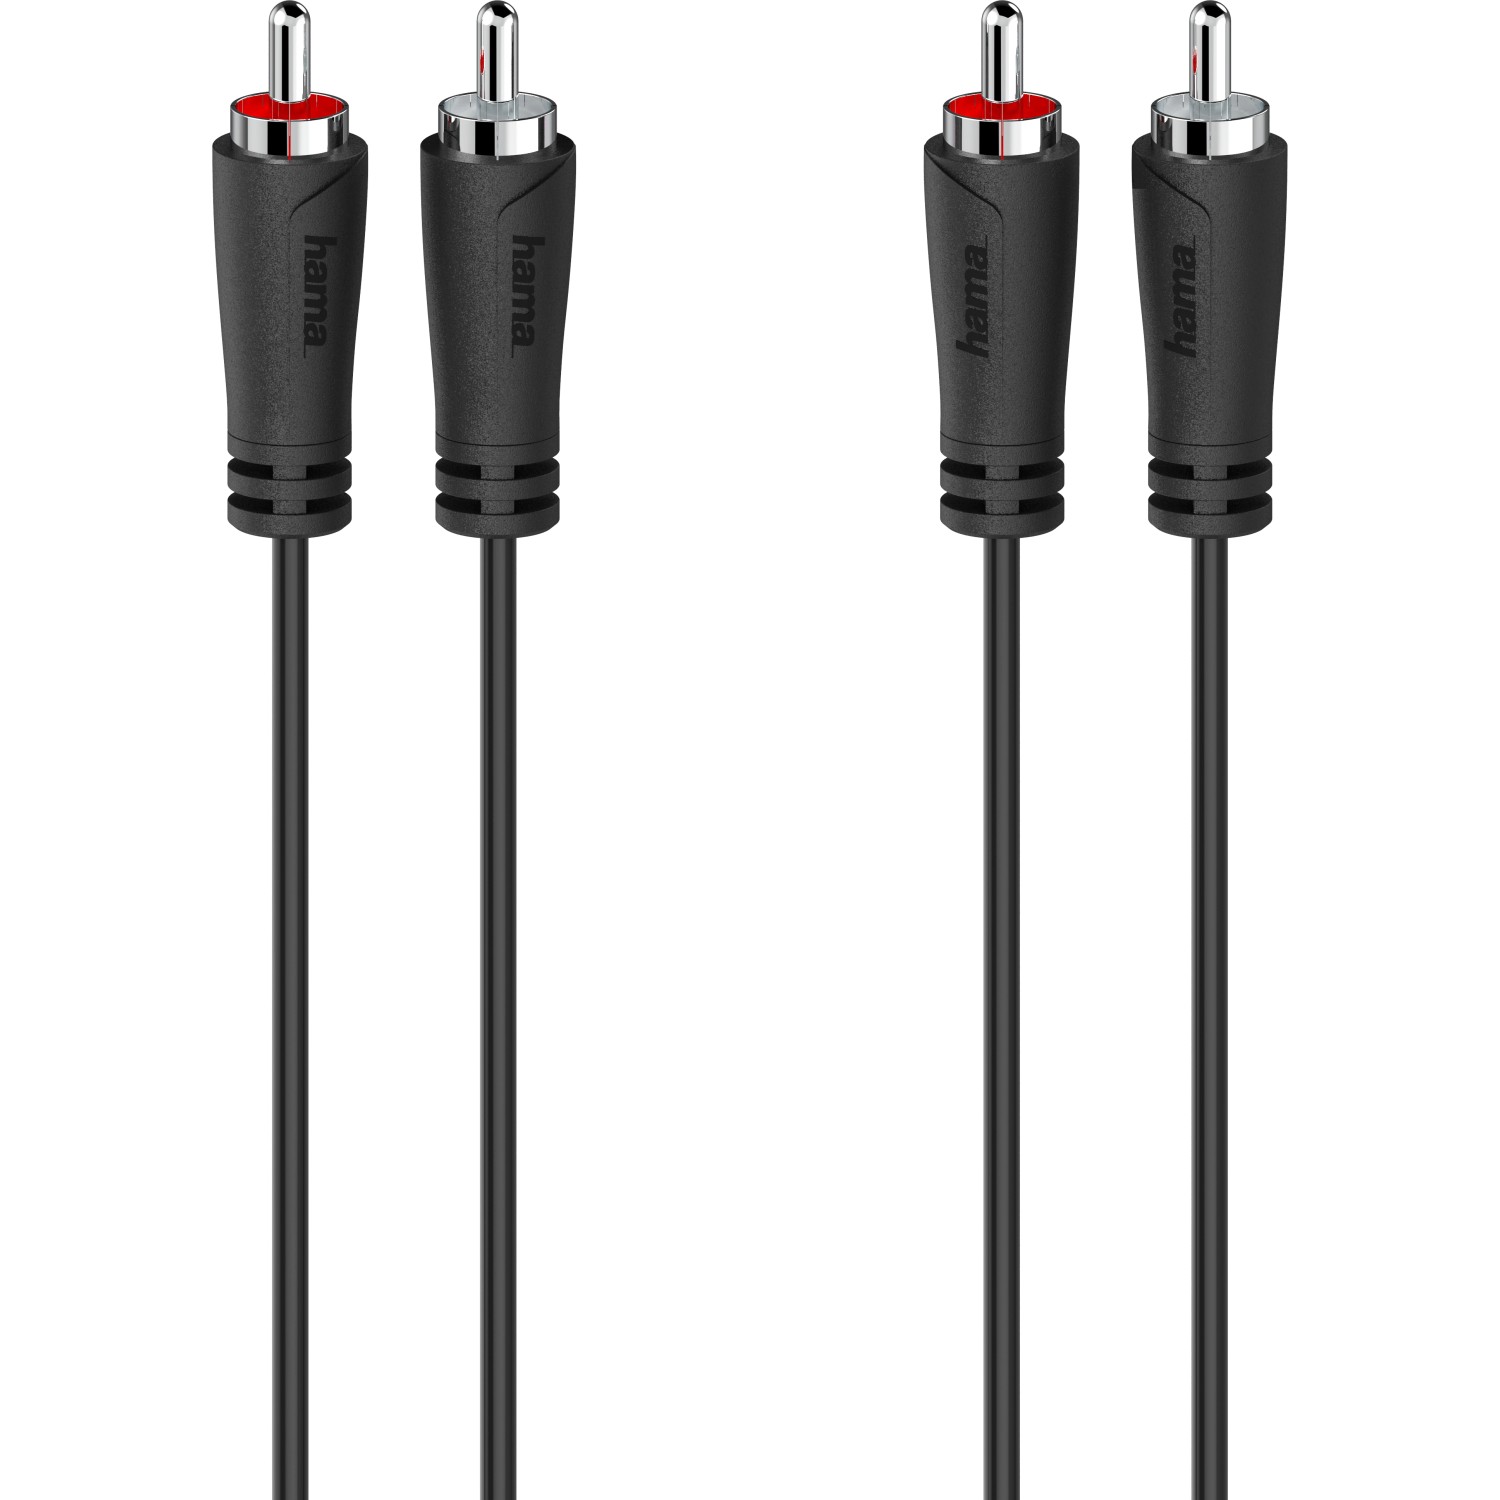 Hama Audio-Kabel 2 Cinch-Stecker/2 Cinch-Stecker Schwarz 1,5 m